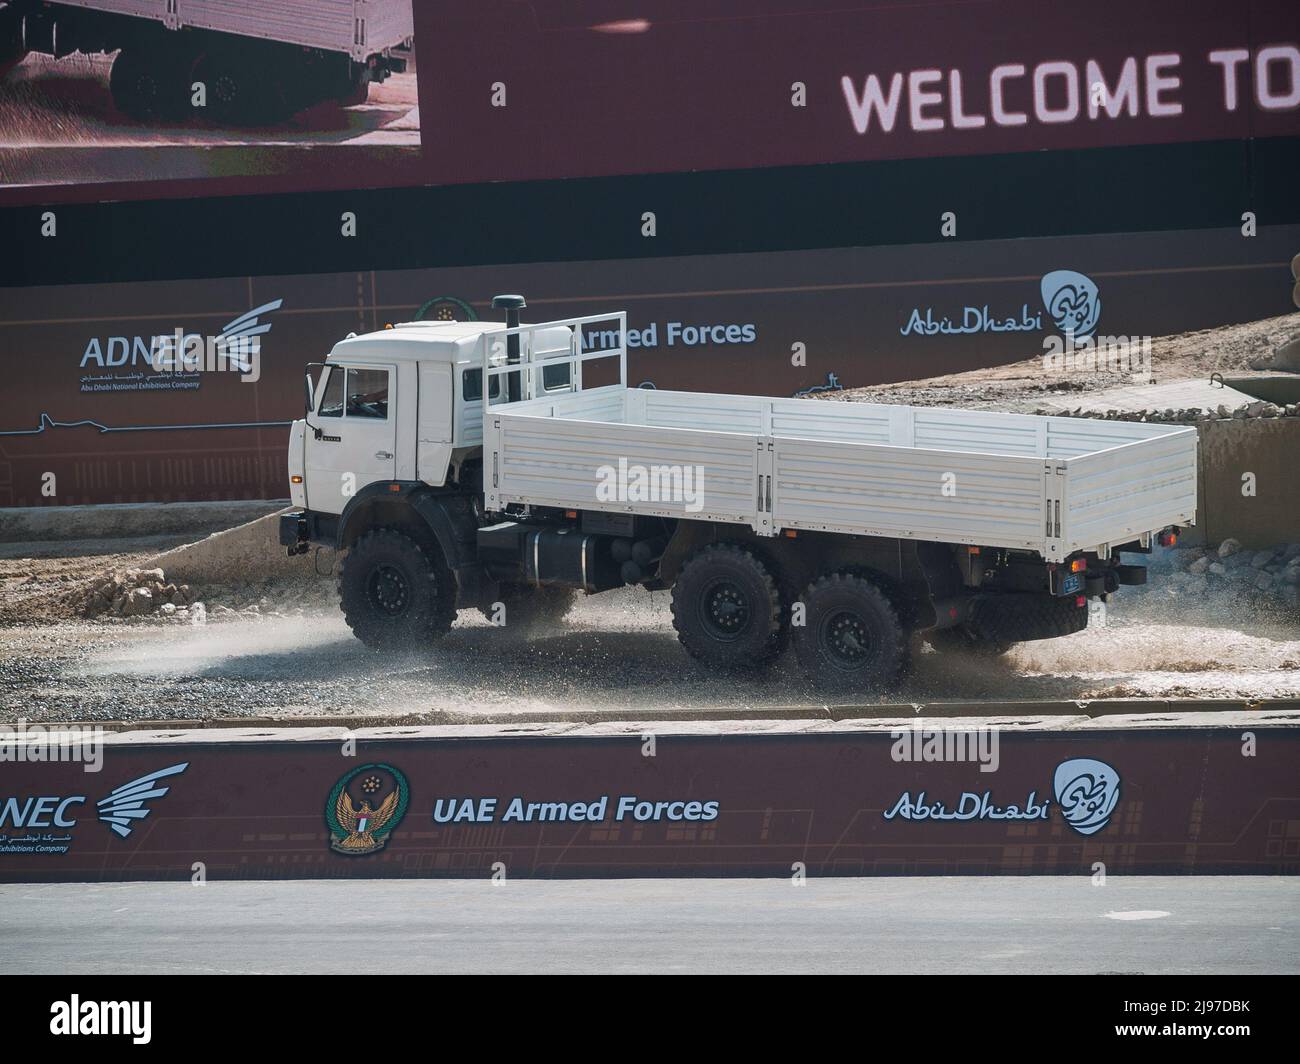 Abu Dhabi, VAE - 23. Februar. 2011: KAMAZ-43118 6X6 LKW auf der IDEX 2011 Militärausstellung Stockfoto